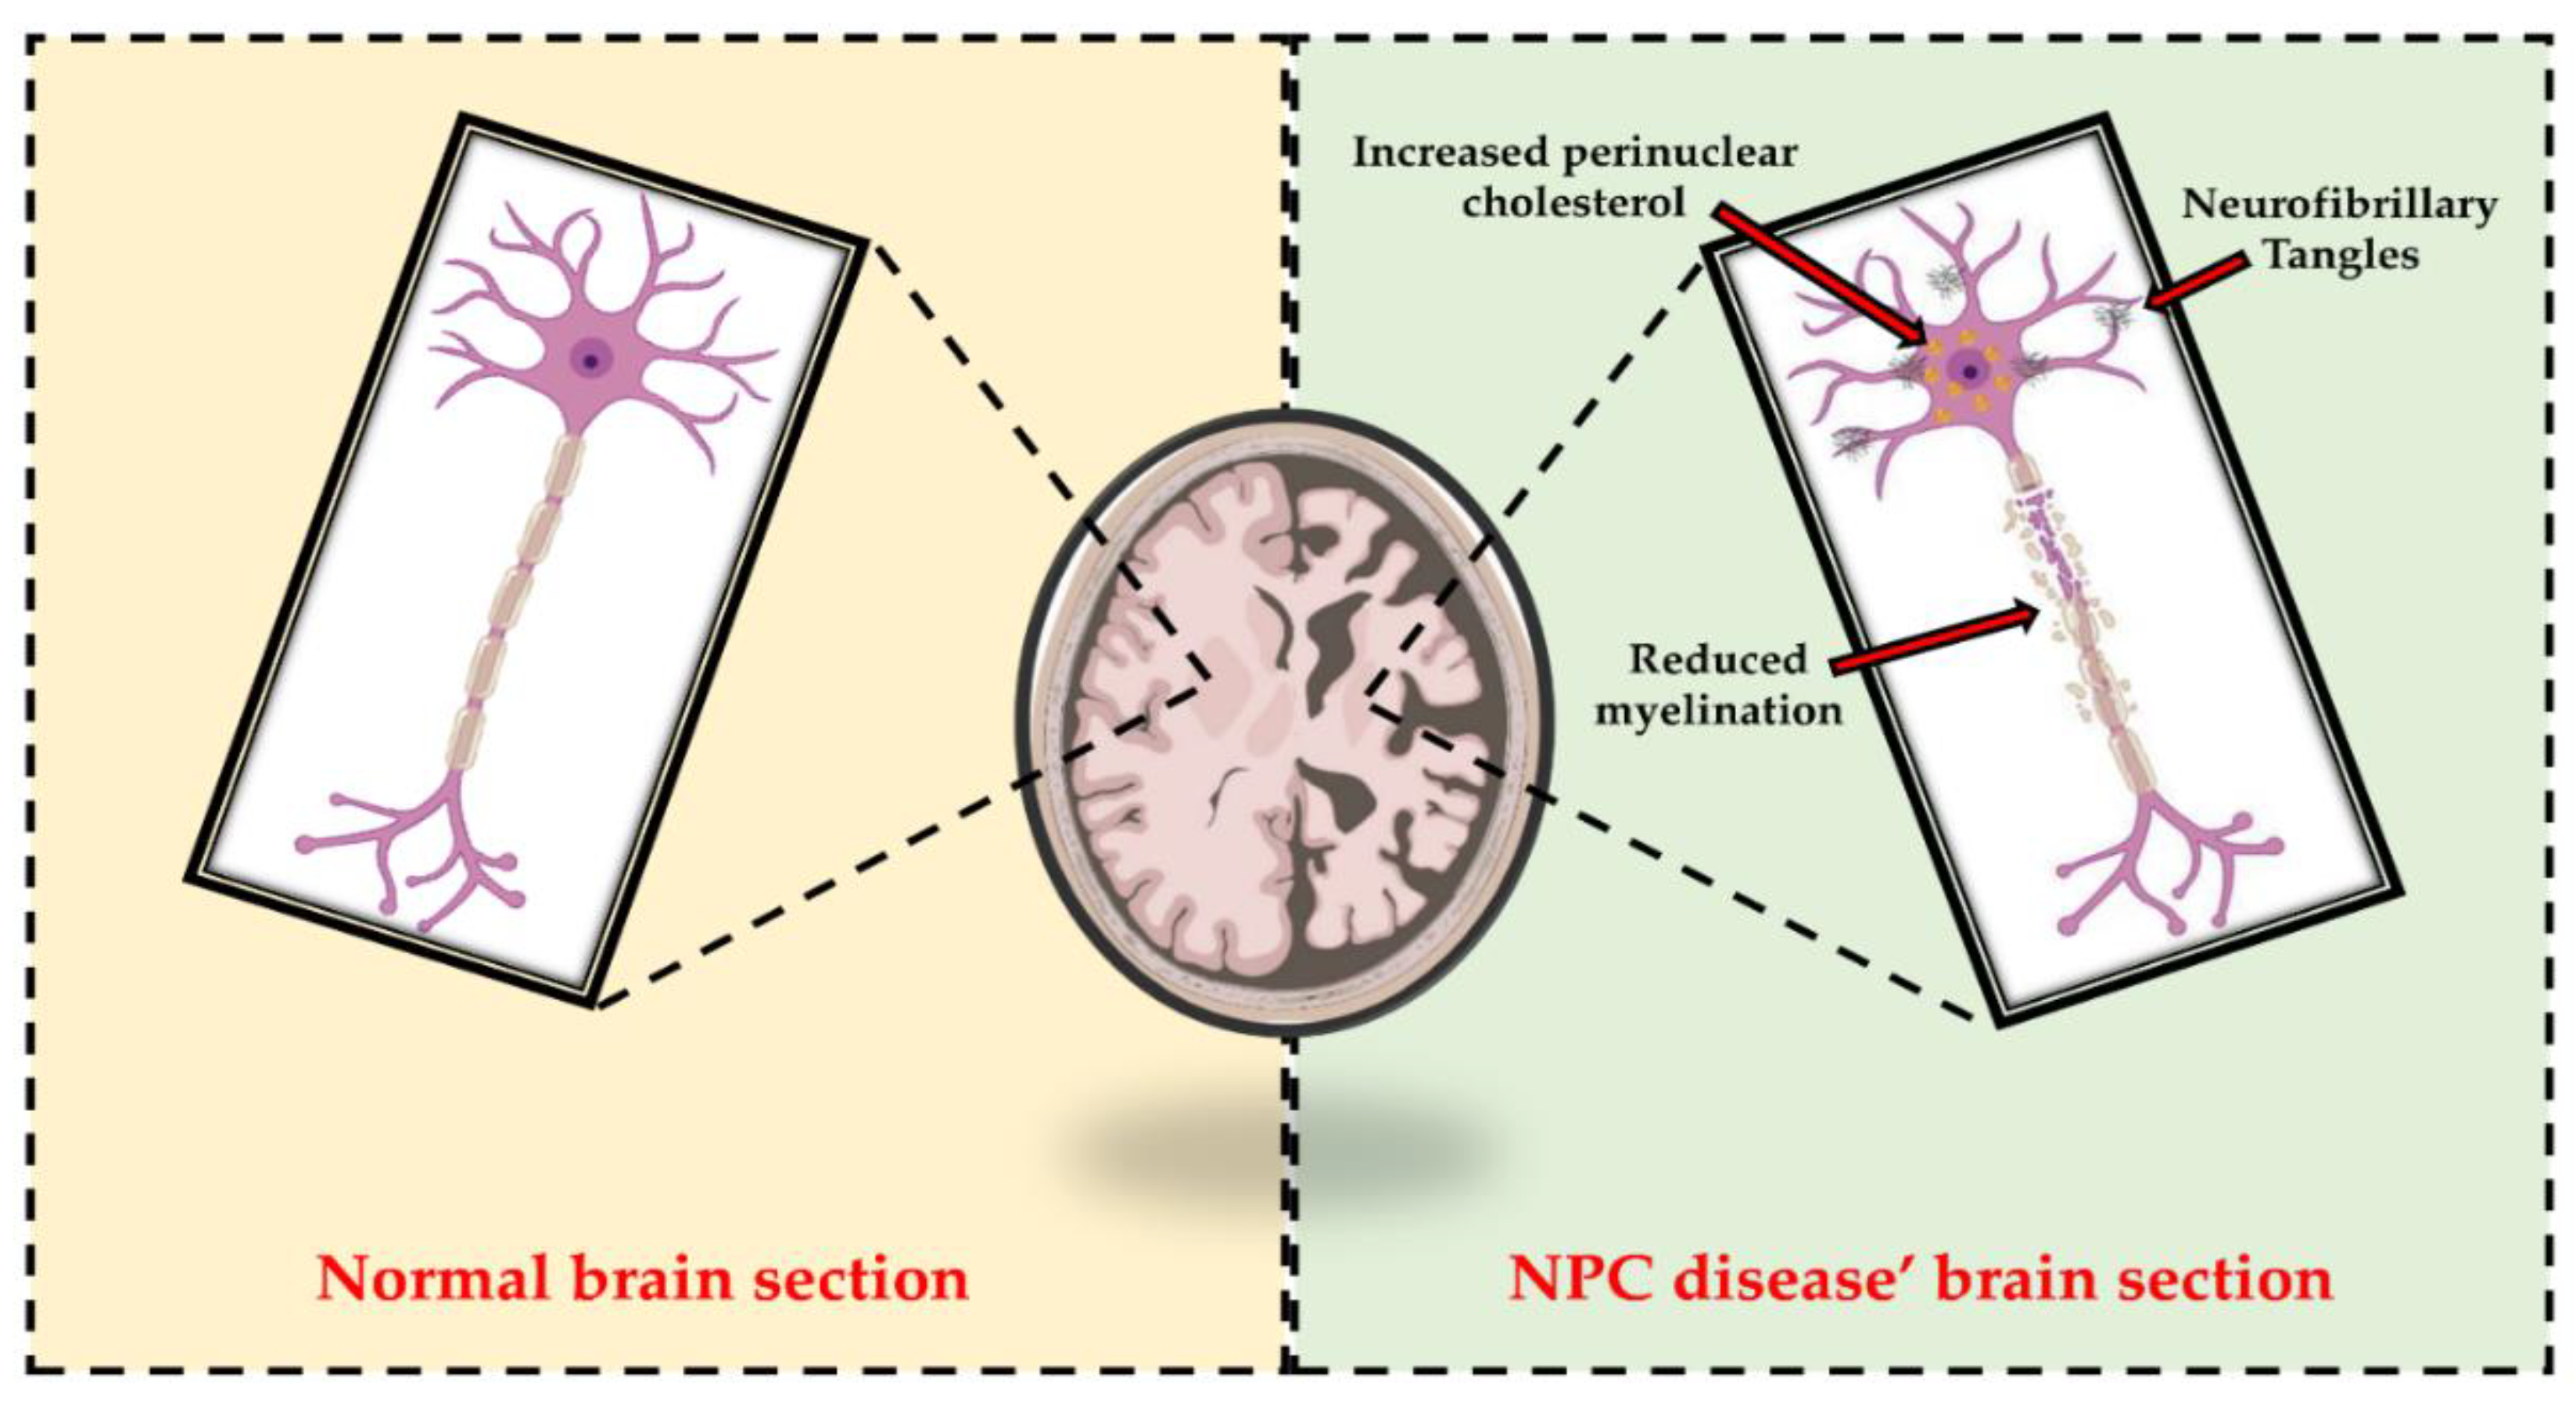 Niemann-Pick disease Information